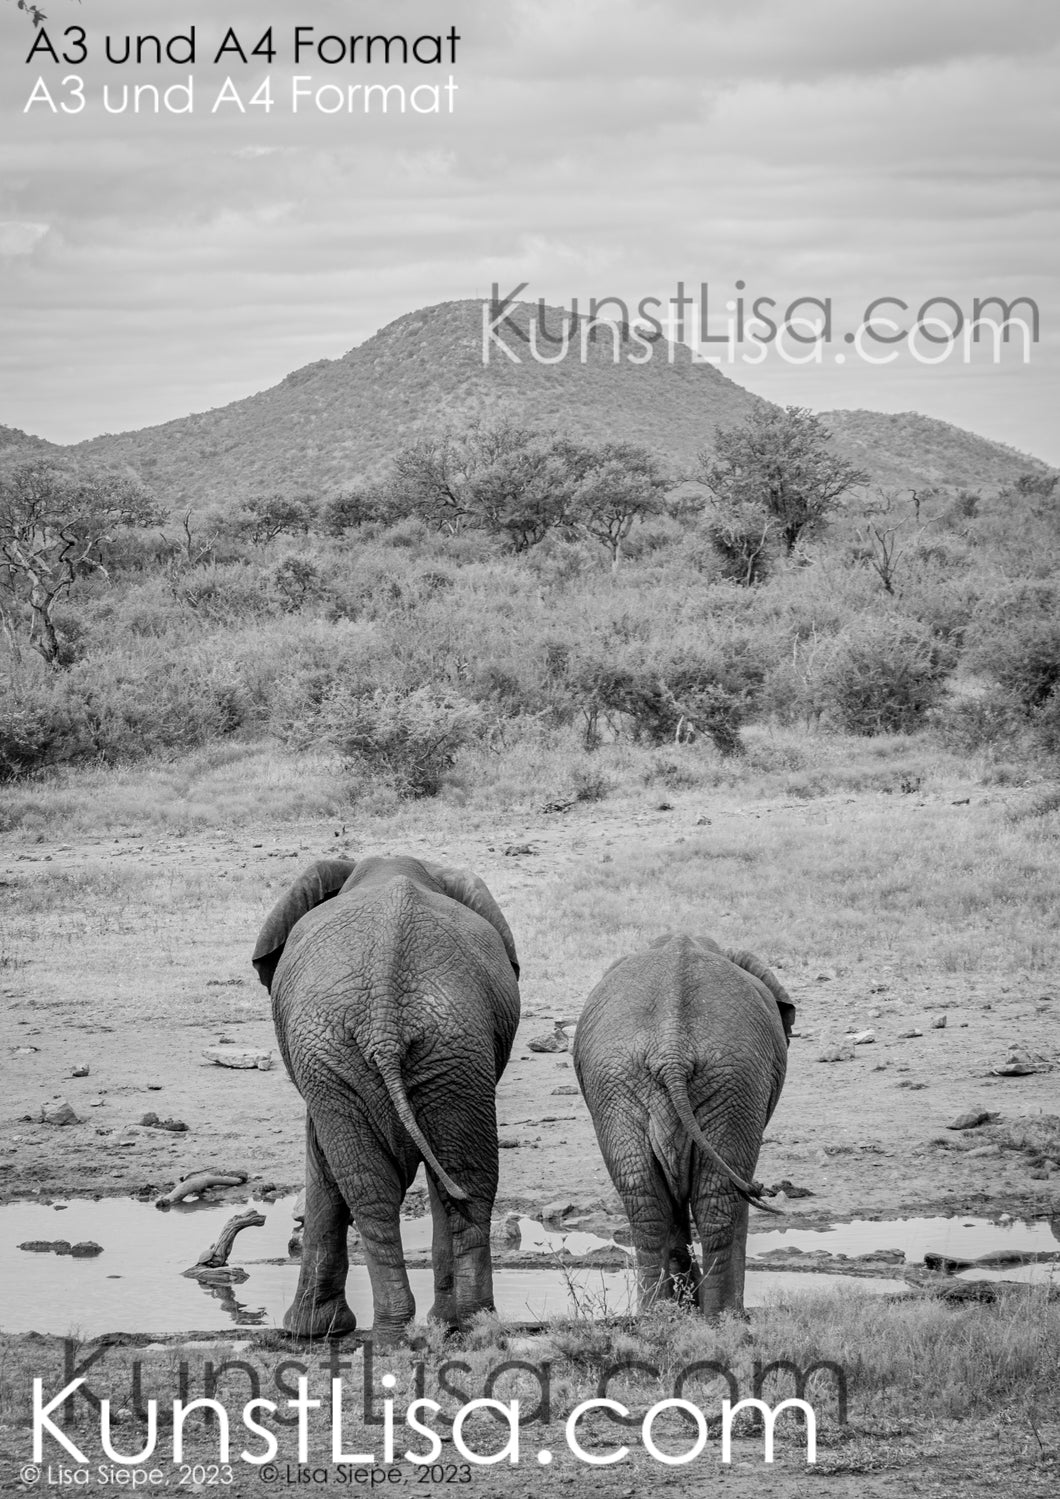 schwarz-weiß-Aufnahme-Ansicht-von-Hinten-Zwei-Elefanten-am-Wasserloch-in-freier-Wildbahn-Berge-im-Hintergrund-in-Südafrika-Format-A3-und-A4